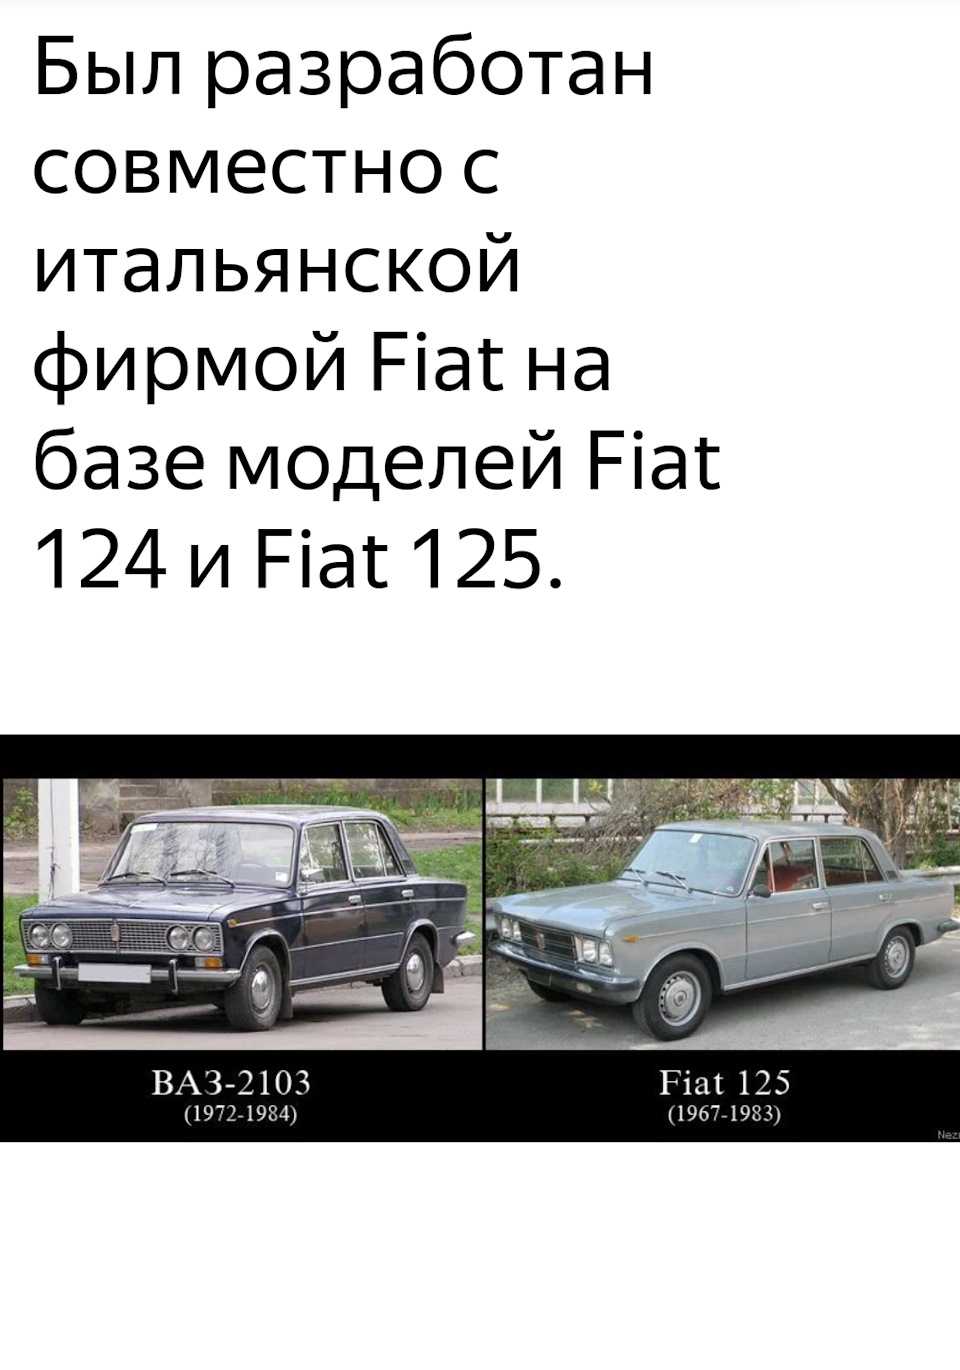 Иж 14 - история модели советского автомобиля, машина из ссср, фото и видео